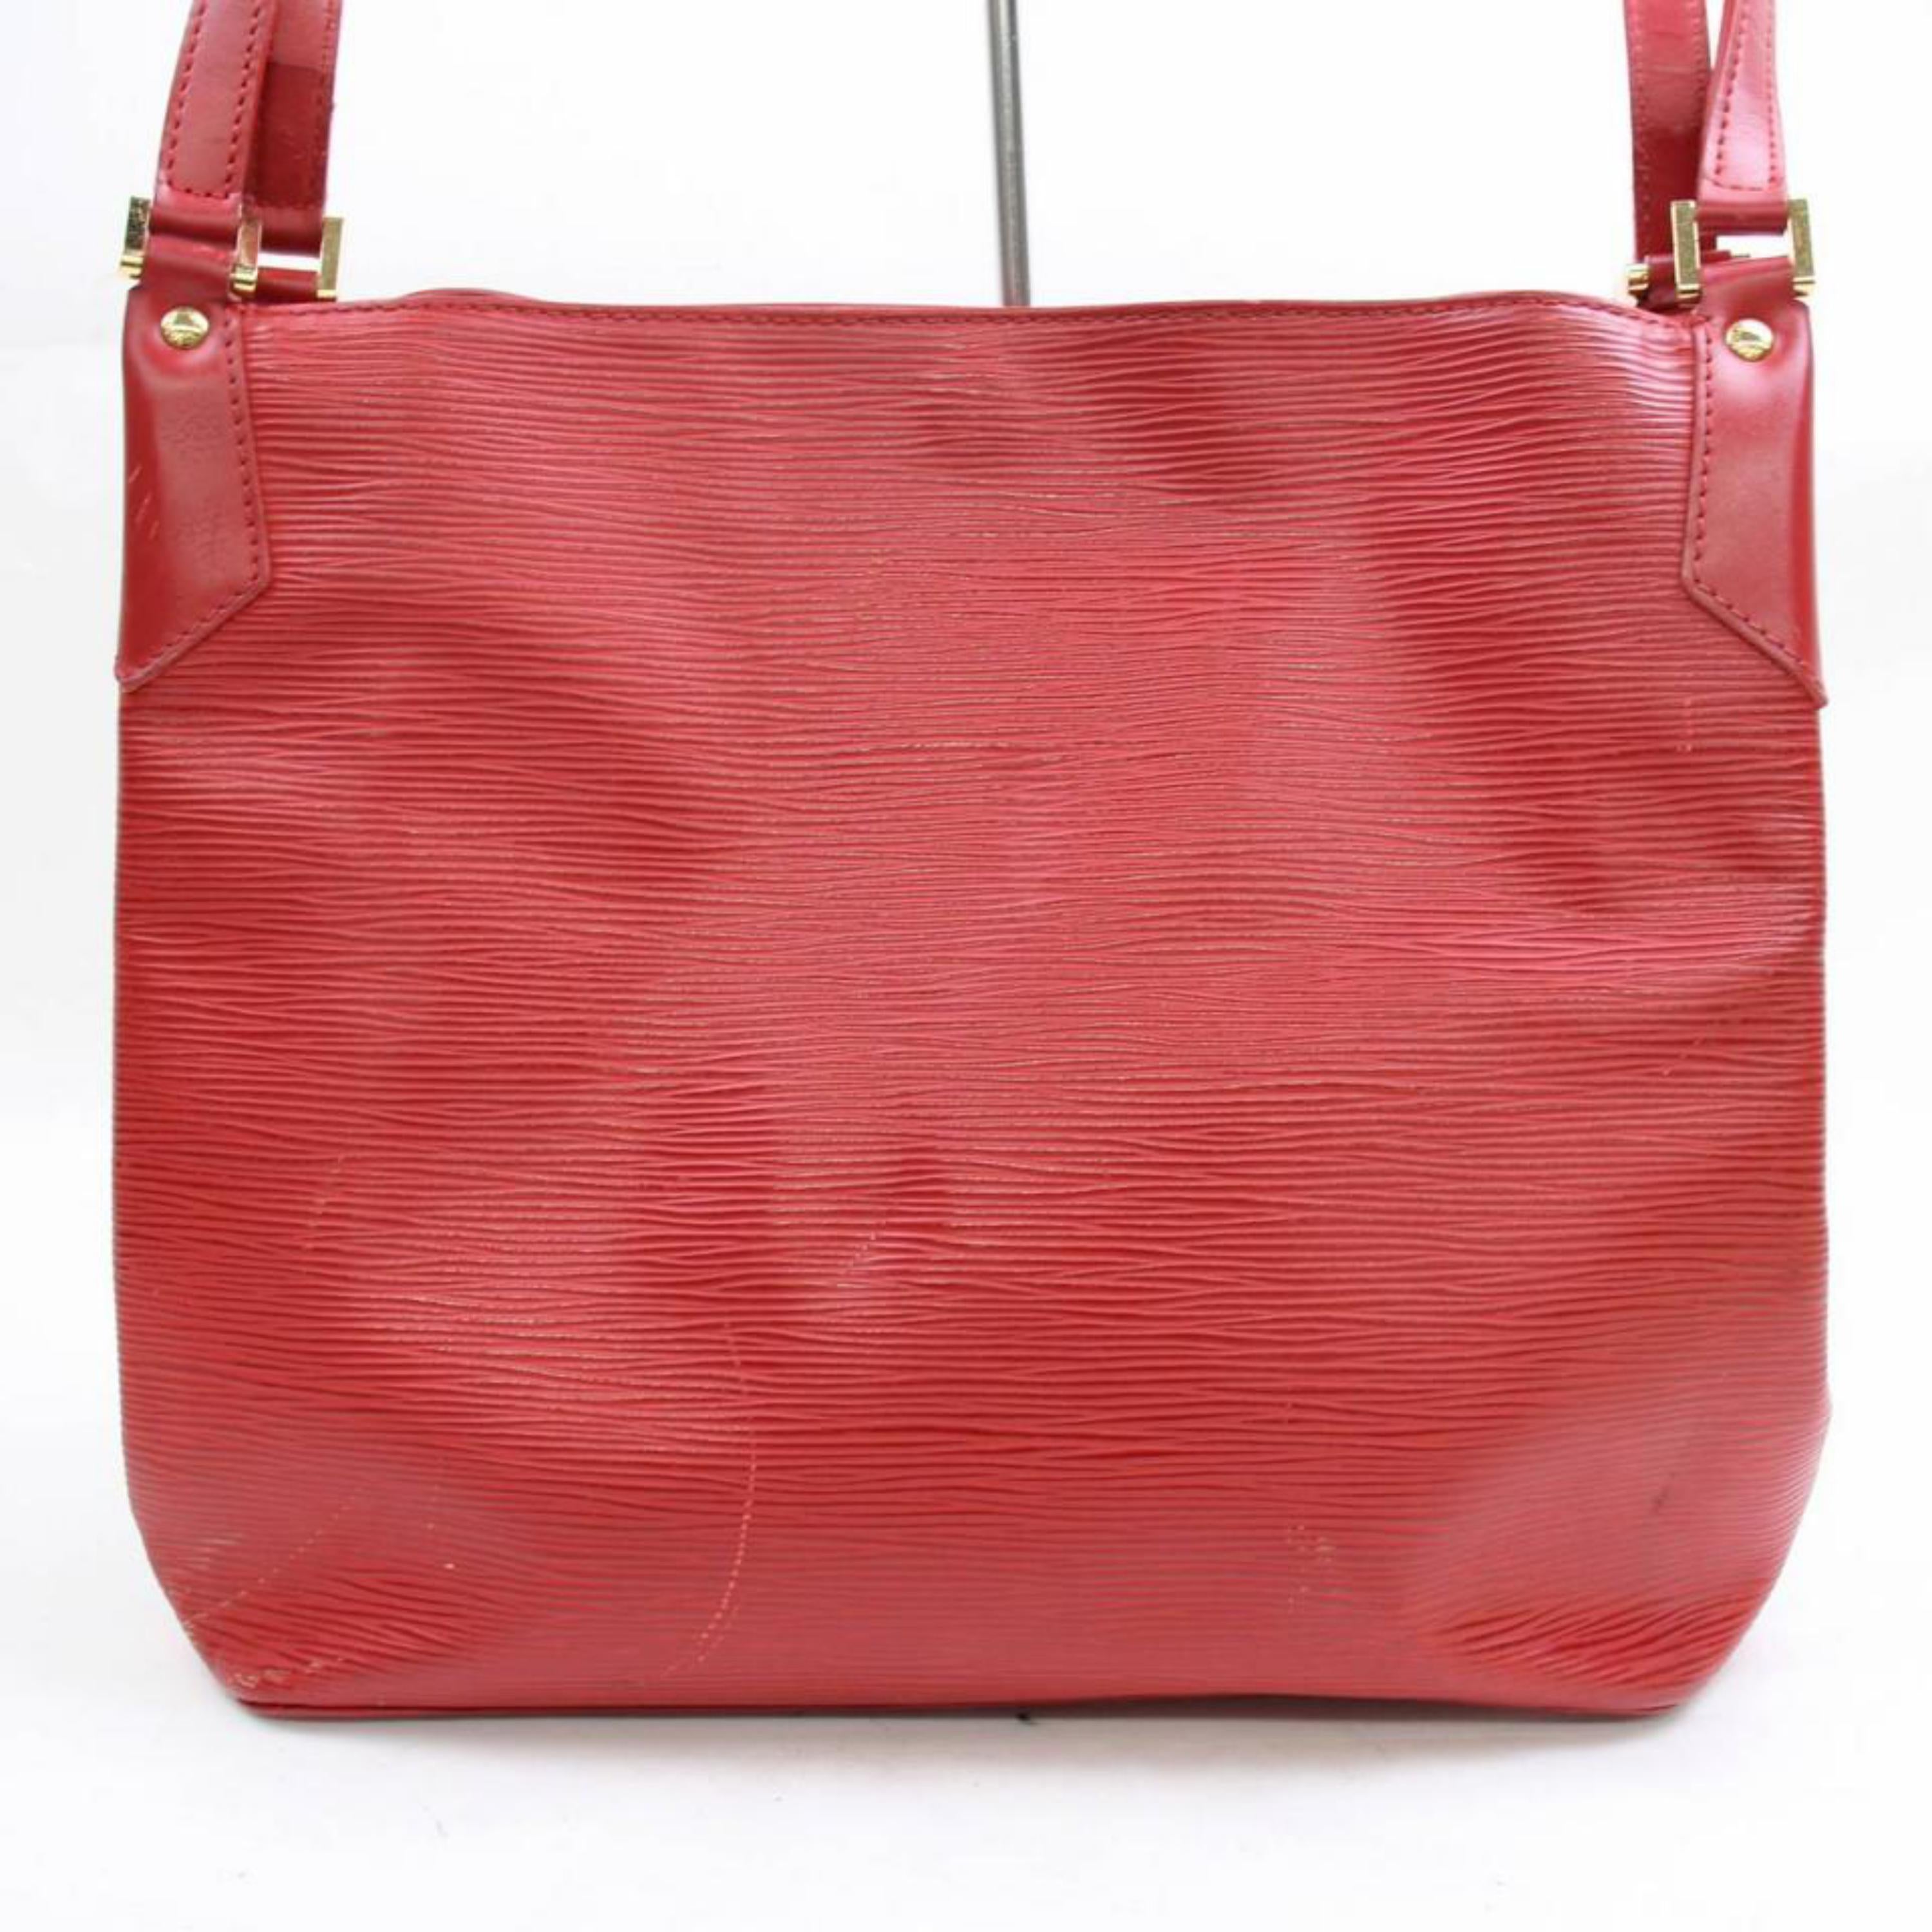 Louis Vuitton Mandara Epi Mm Hobo 868362 Red Leather Shoulder Bag For Sale 2